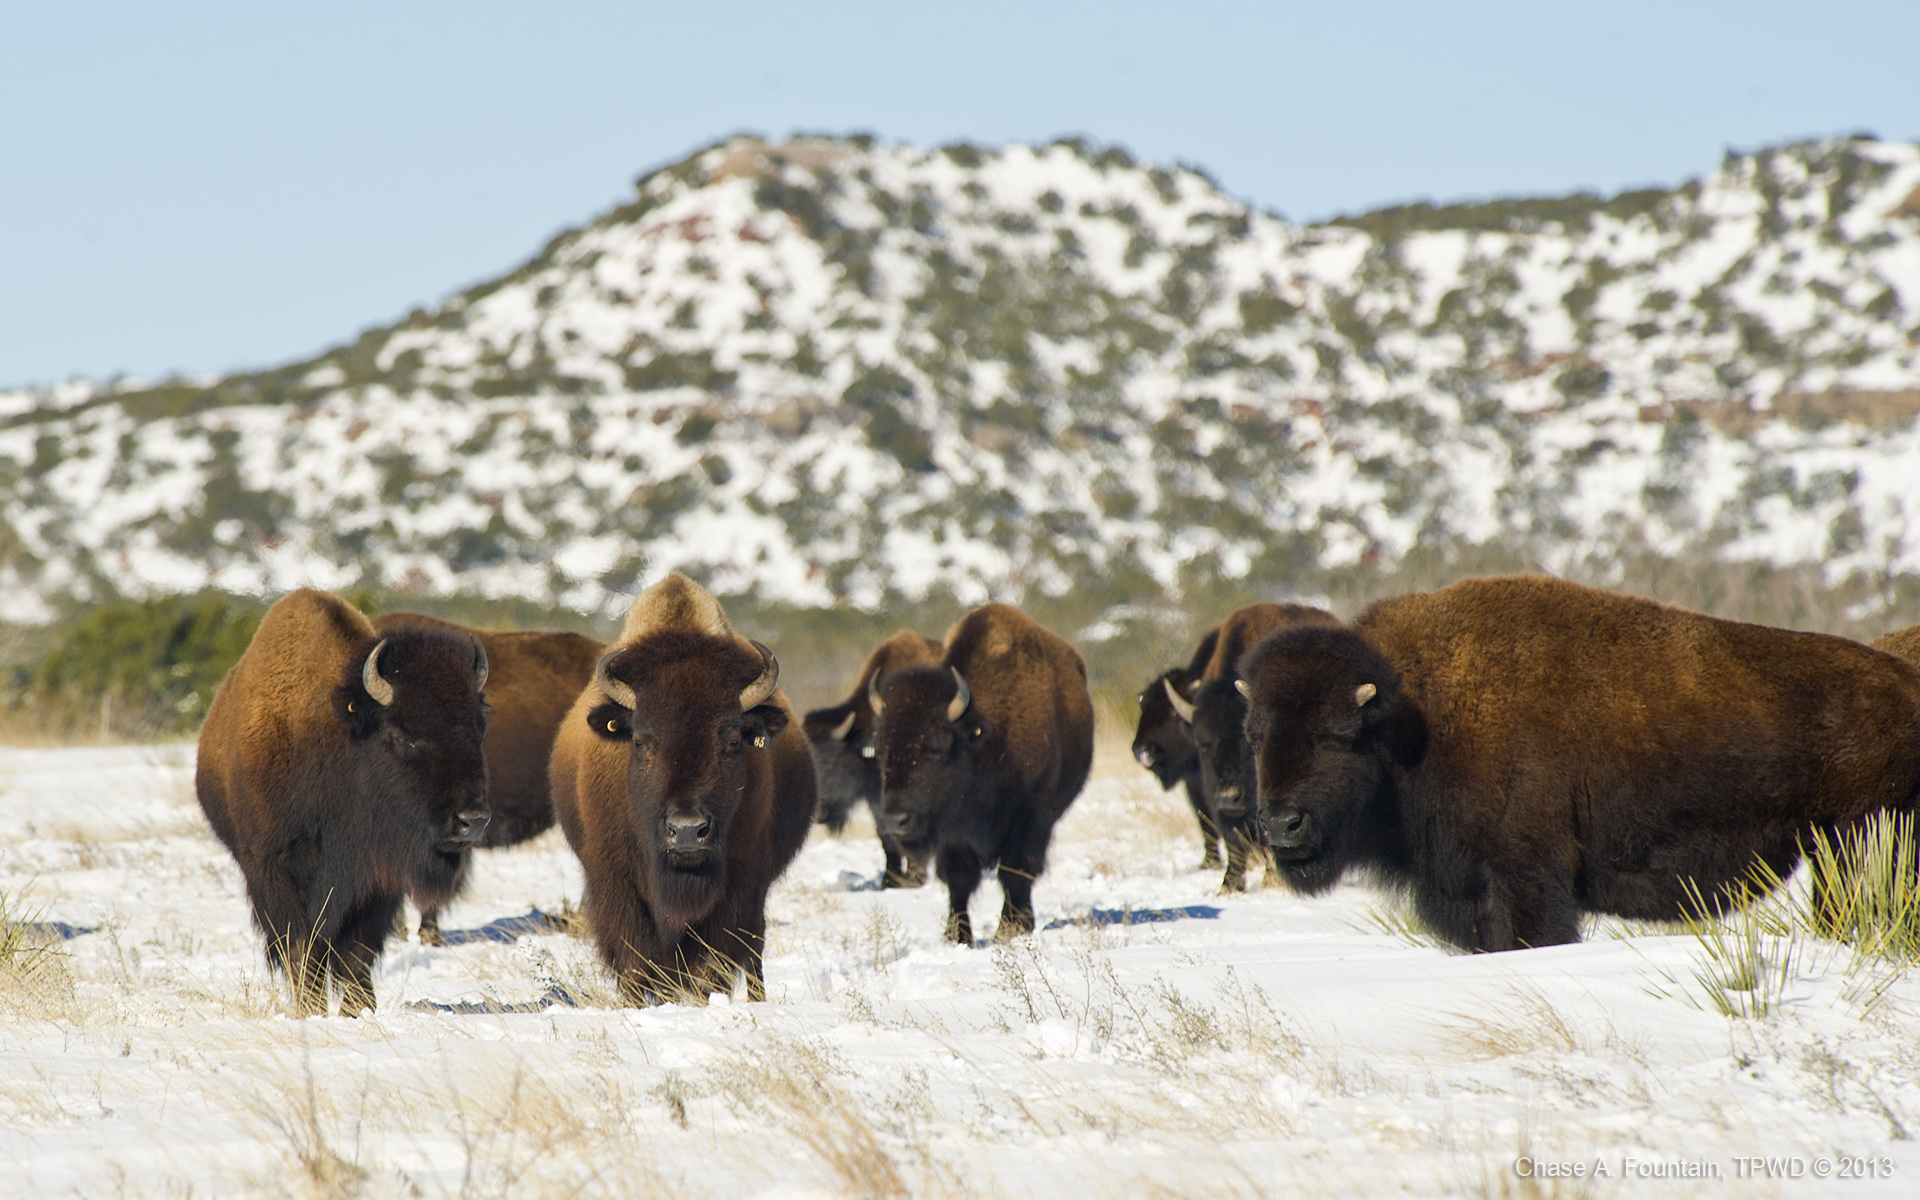 Female leadership nothing new to buffalo | PolitiFact Texas